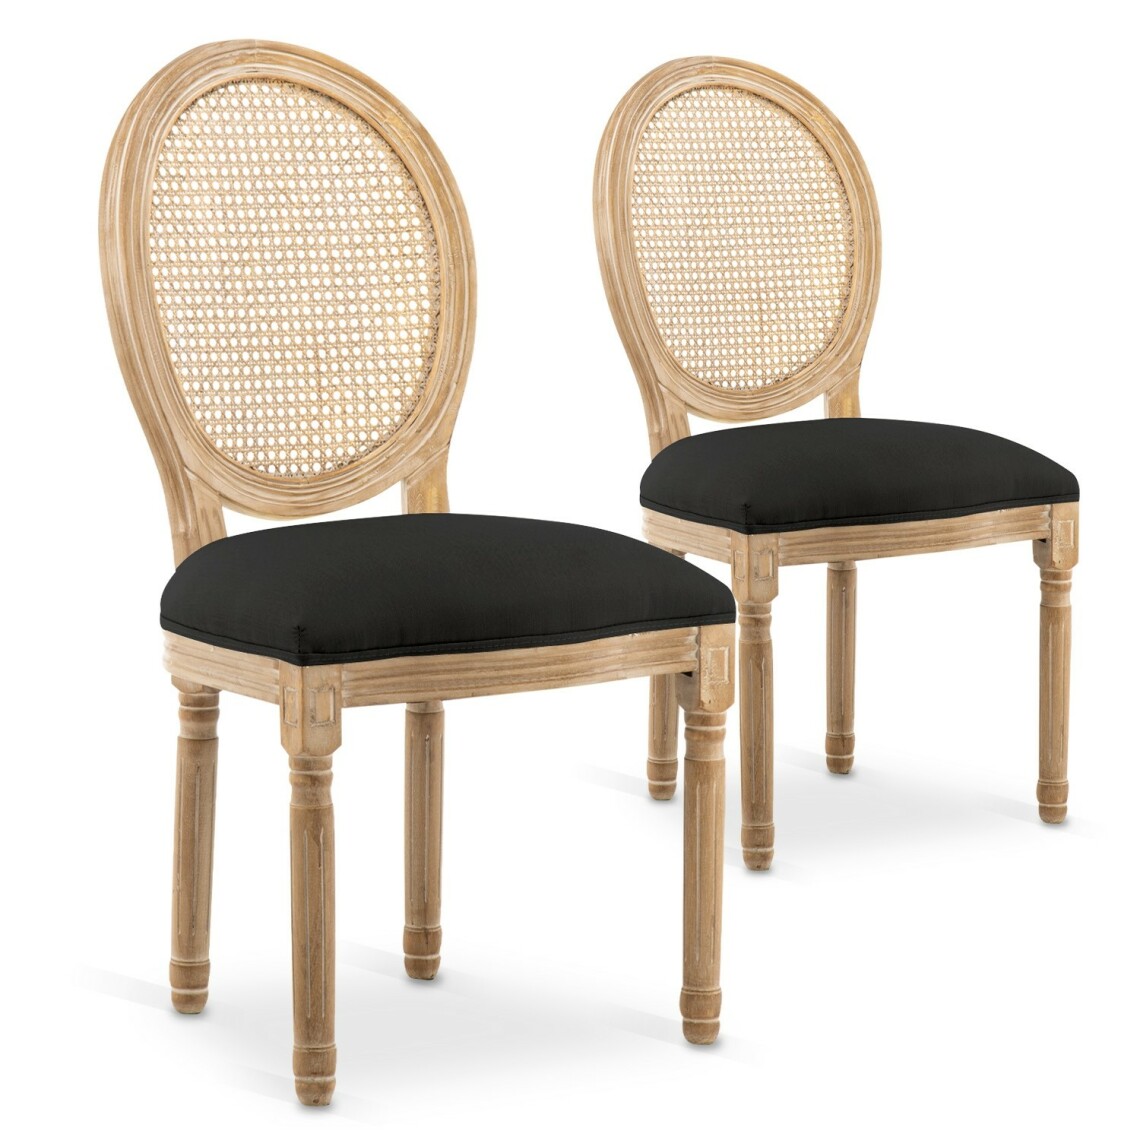 marque generique - Lot de 2 chaises médaillon Louis XVI Cannage Rotin tissu Noir - Chaises